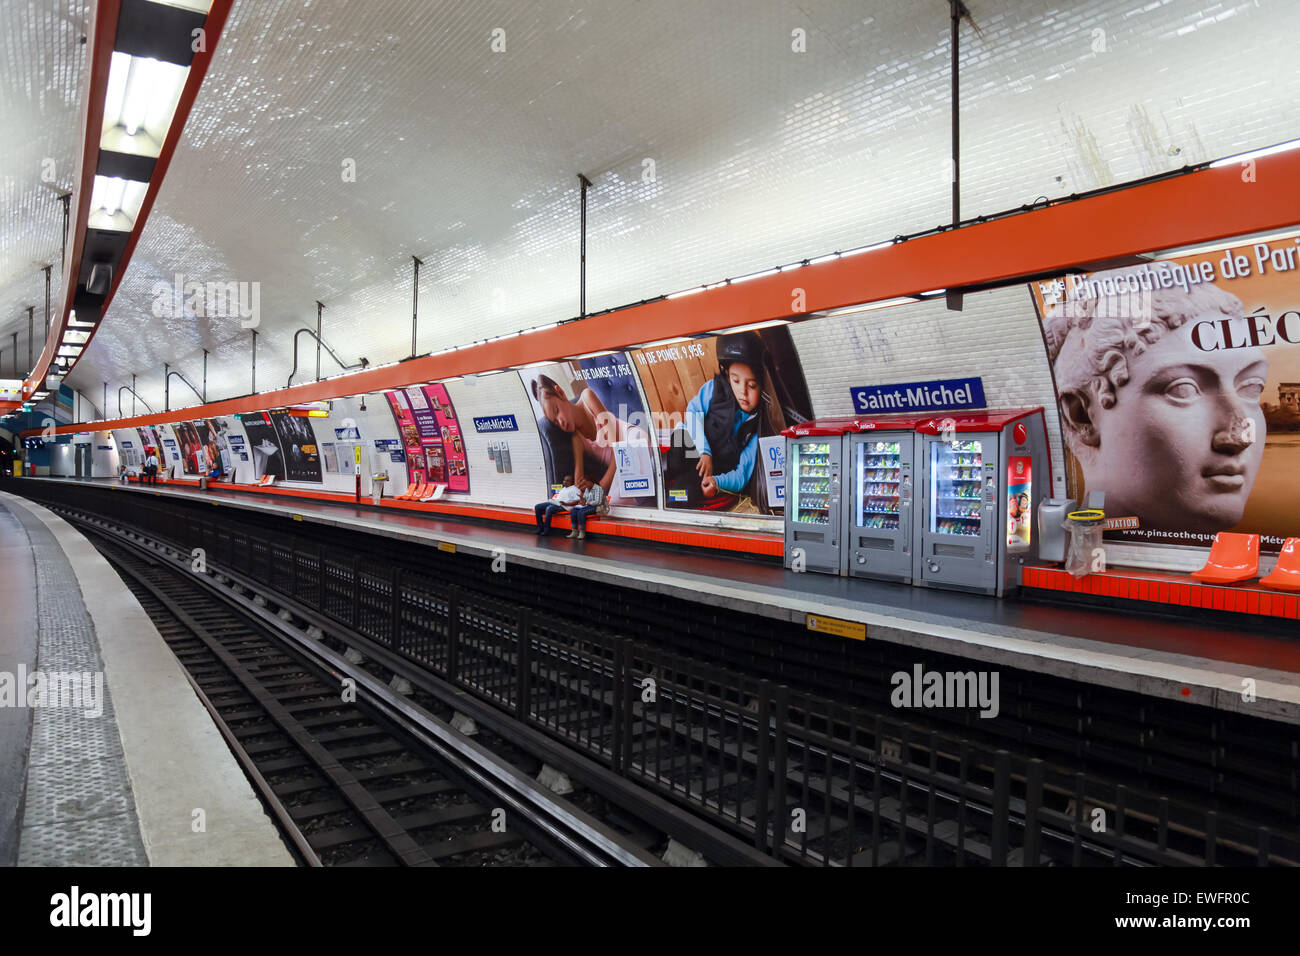 Paris, Frankreich - 8. August 2014: Saint-Michel. Paris u-Bahn-Station mit wenigen Passagieren und Werbeplakate Stockfoto